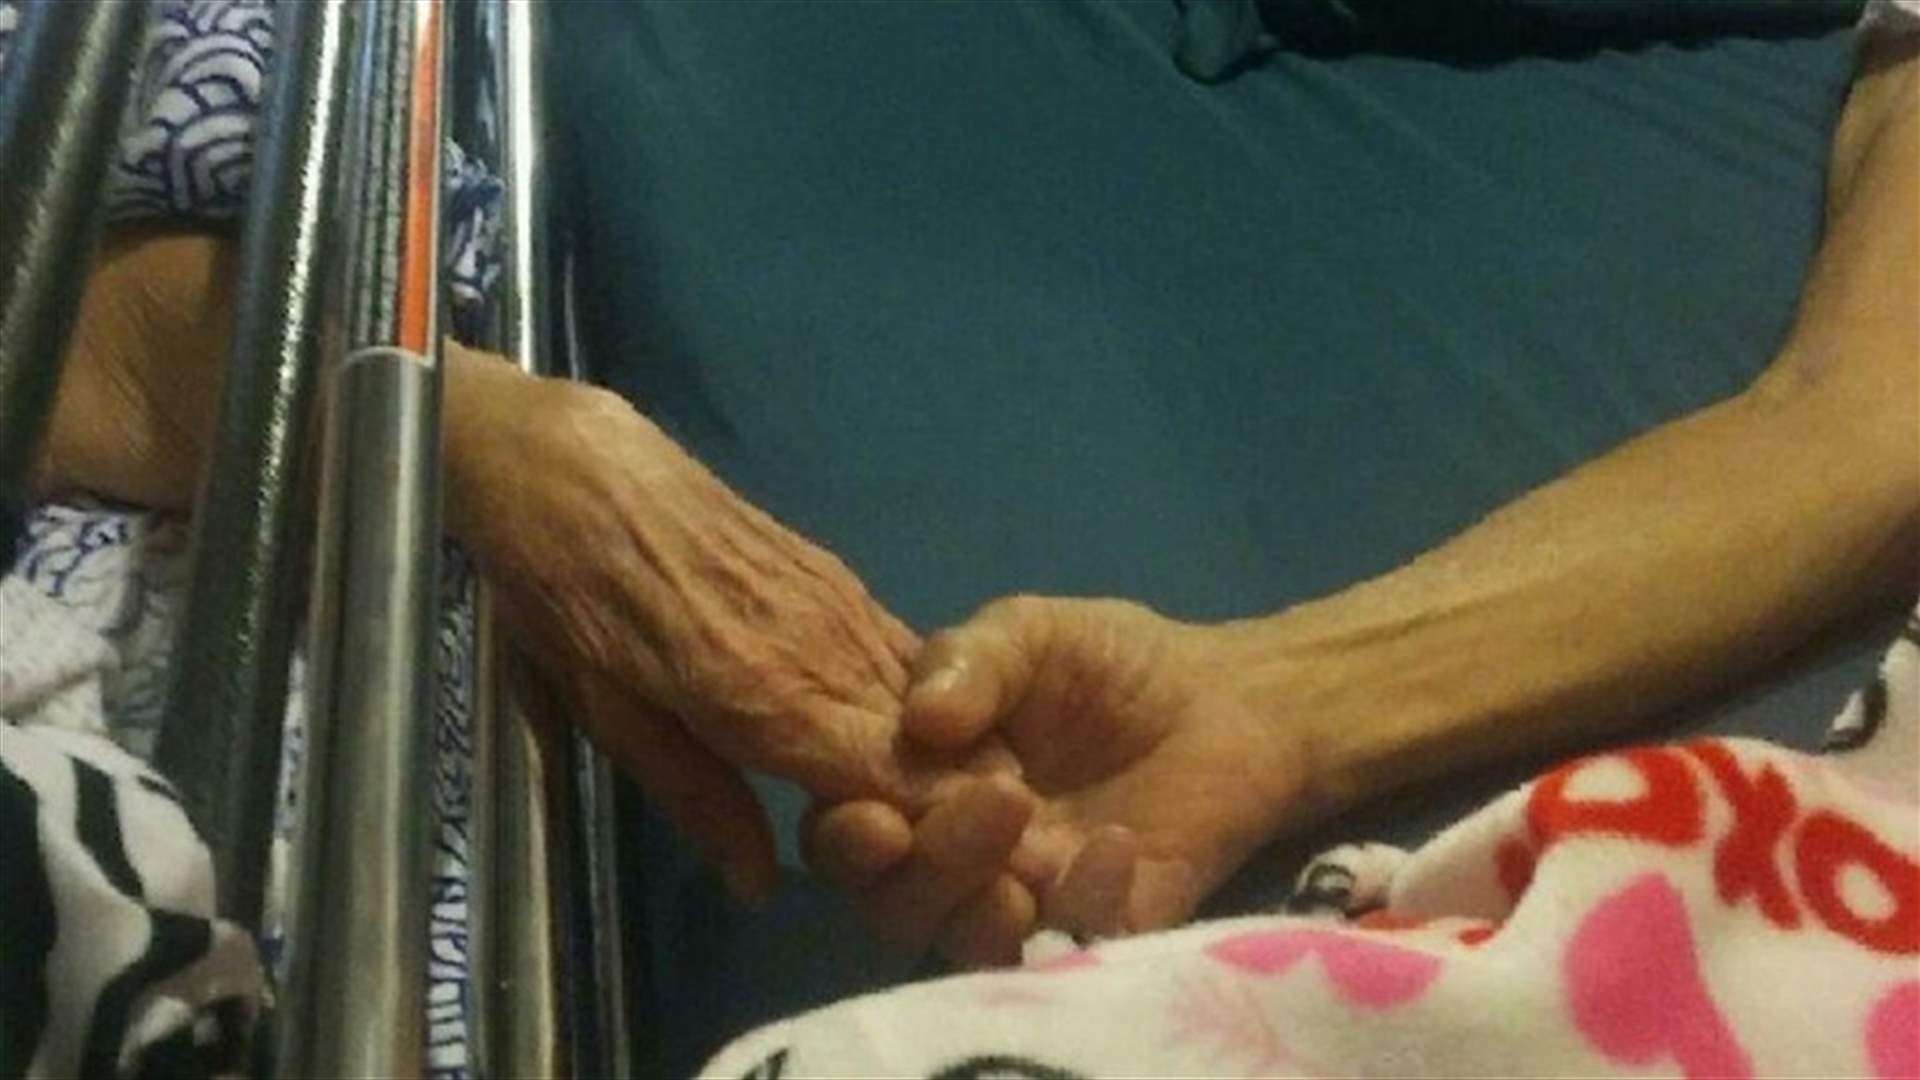 بعد 58 عاماً على زواجهما... توفيا يداً بيد